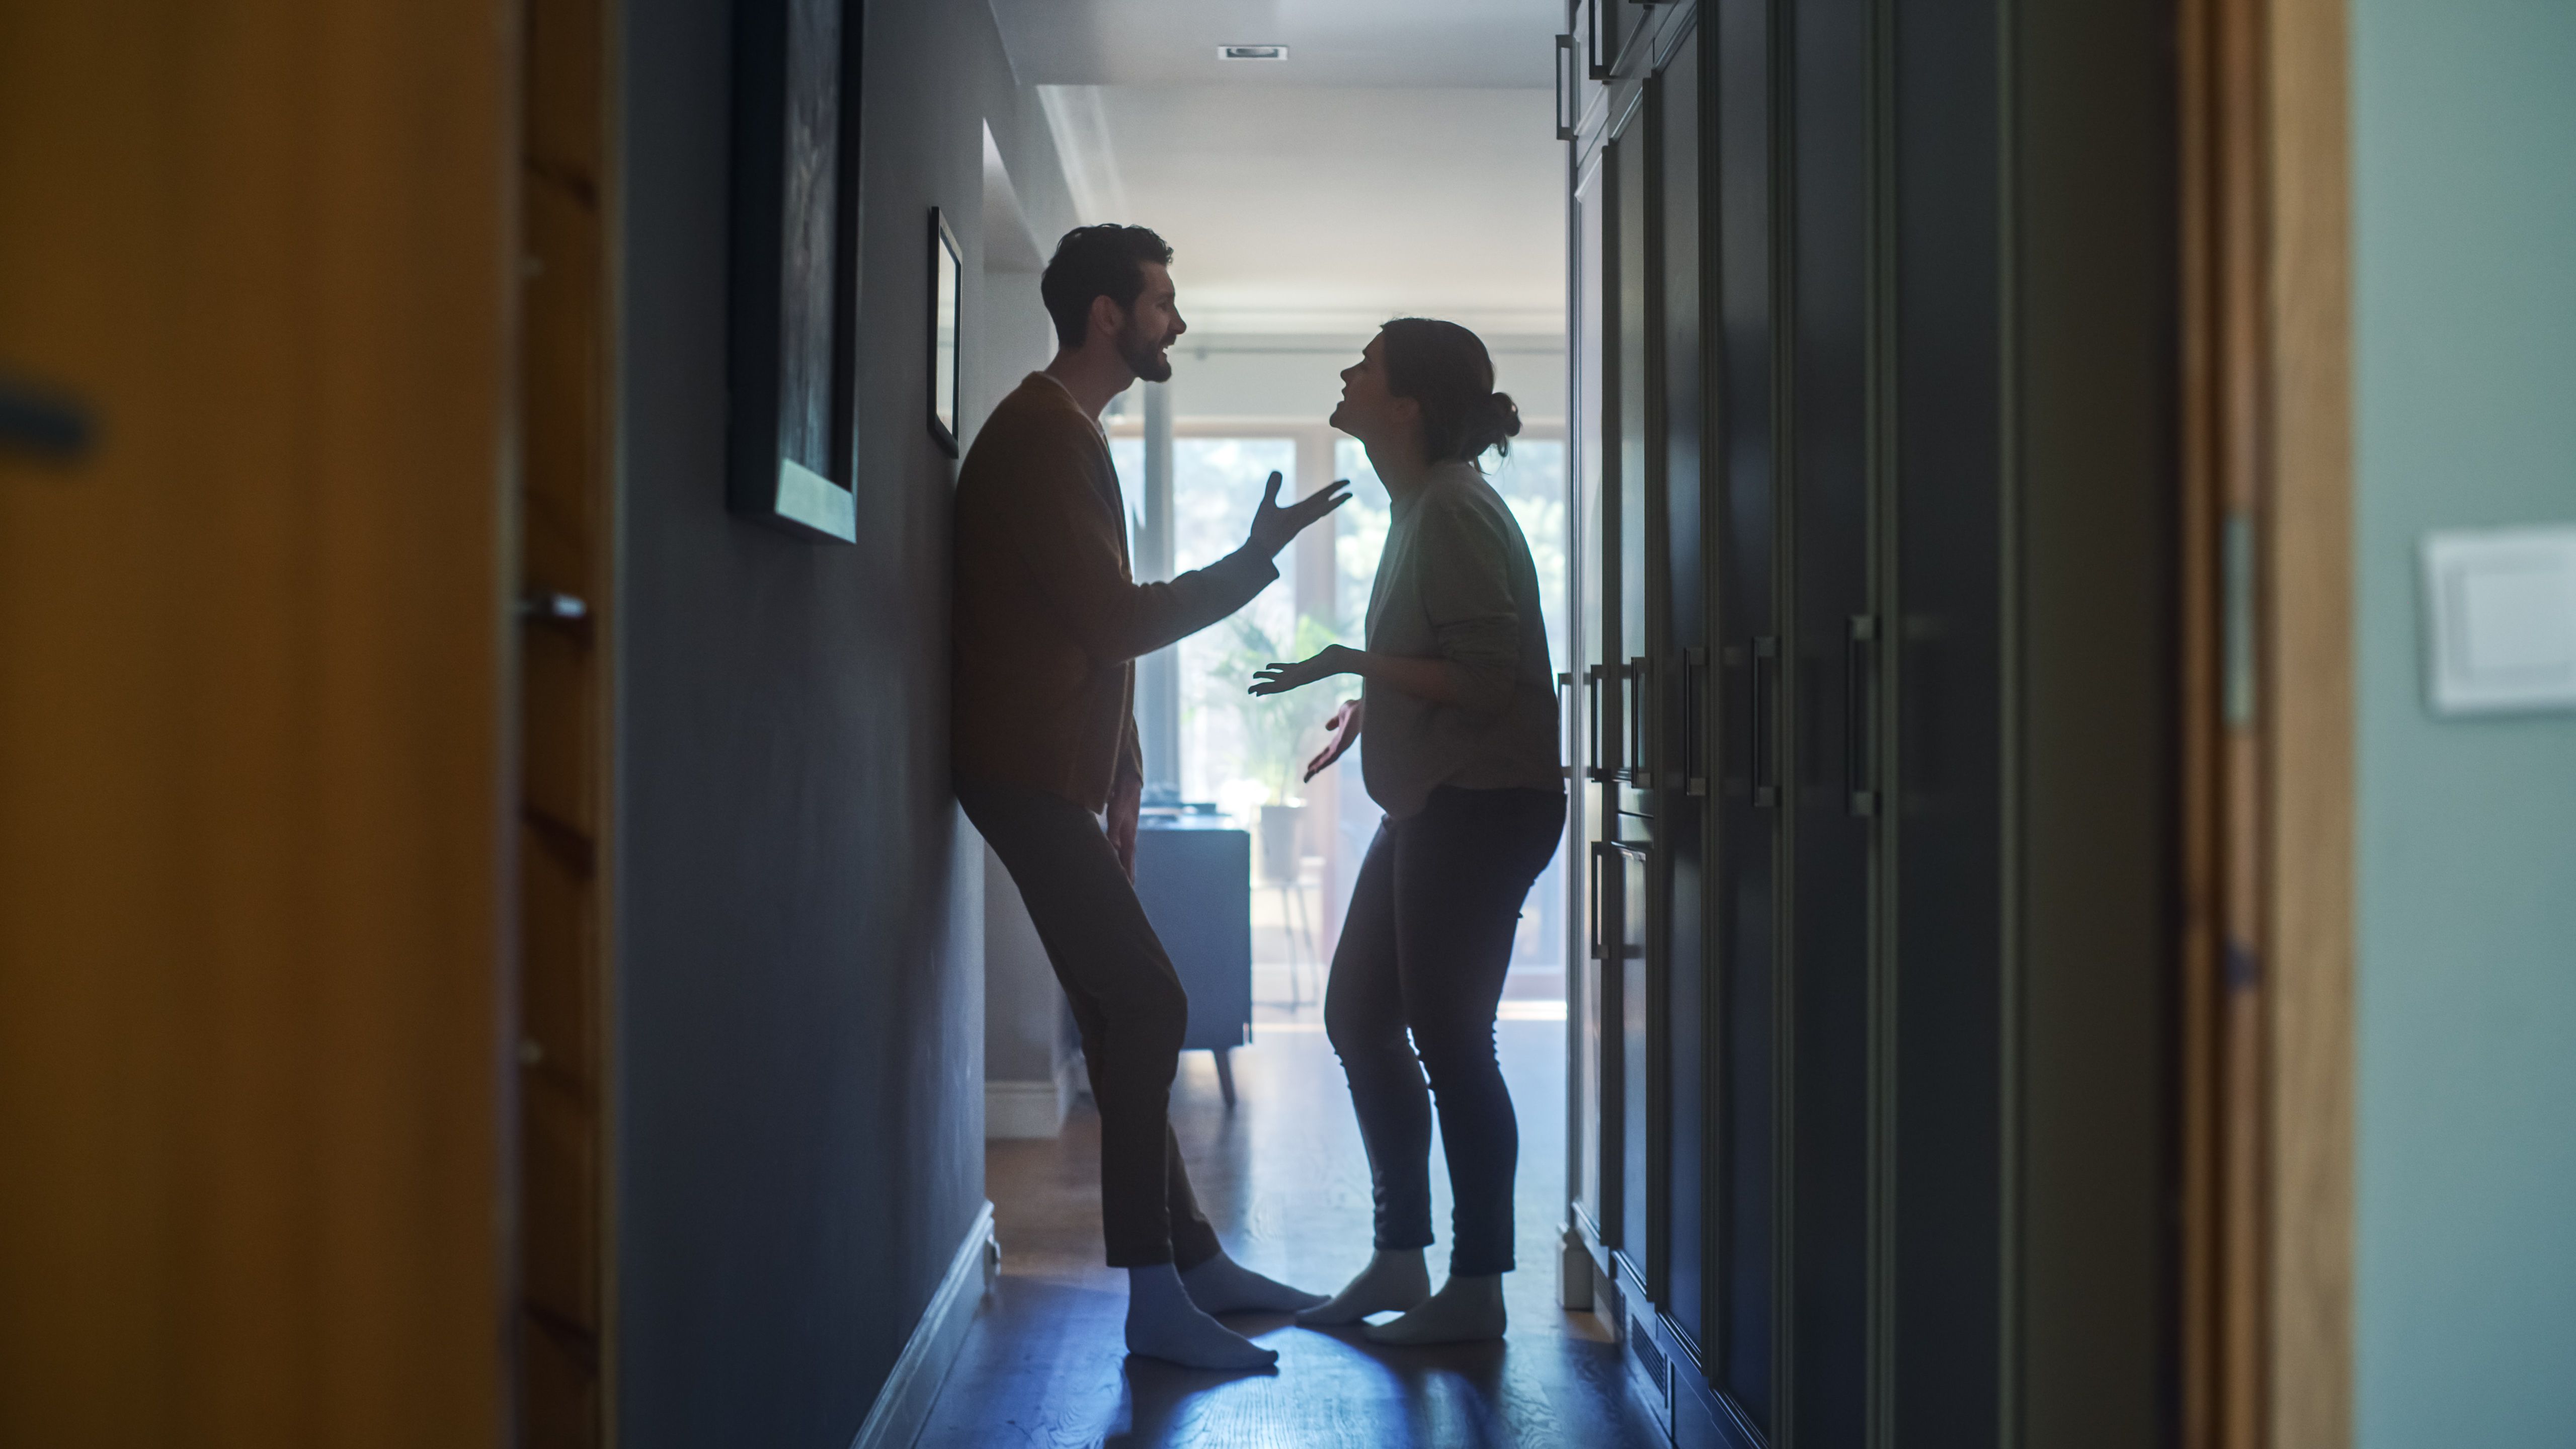 Un homme et une femme qui se disputent à la maison | Source : Getty Images